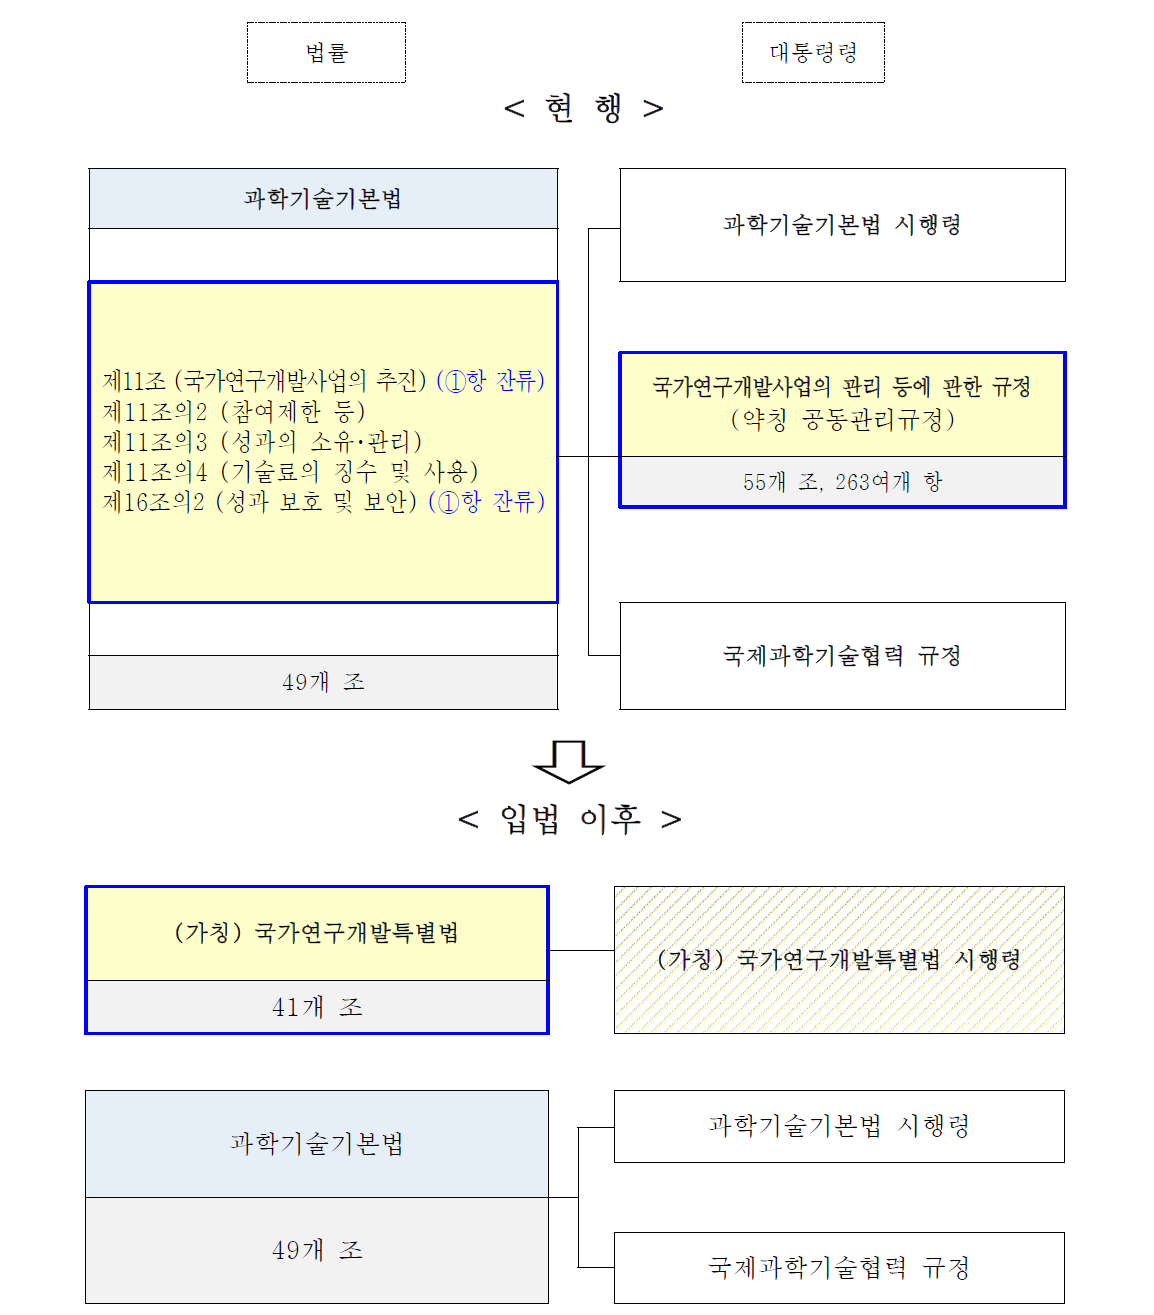 입법 전후 과학기술기본법 및 하위령 비교 출처 : 한국과학기술기획평가원(KISTEP) 연구진 작성